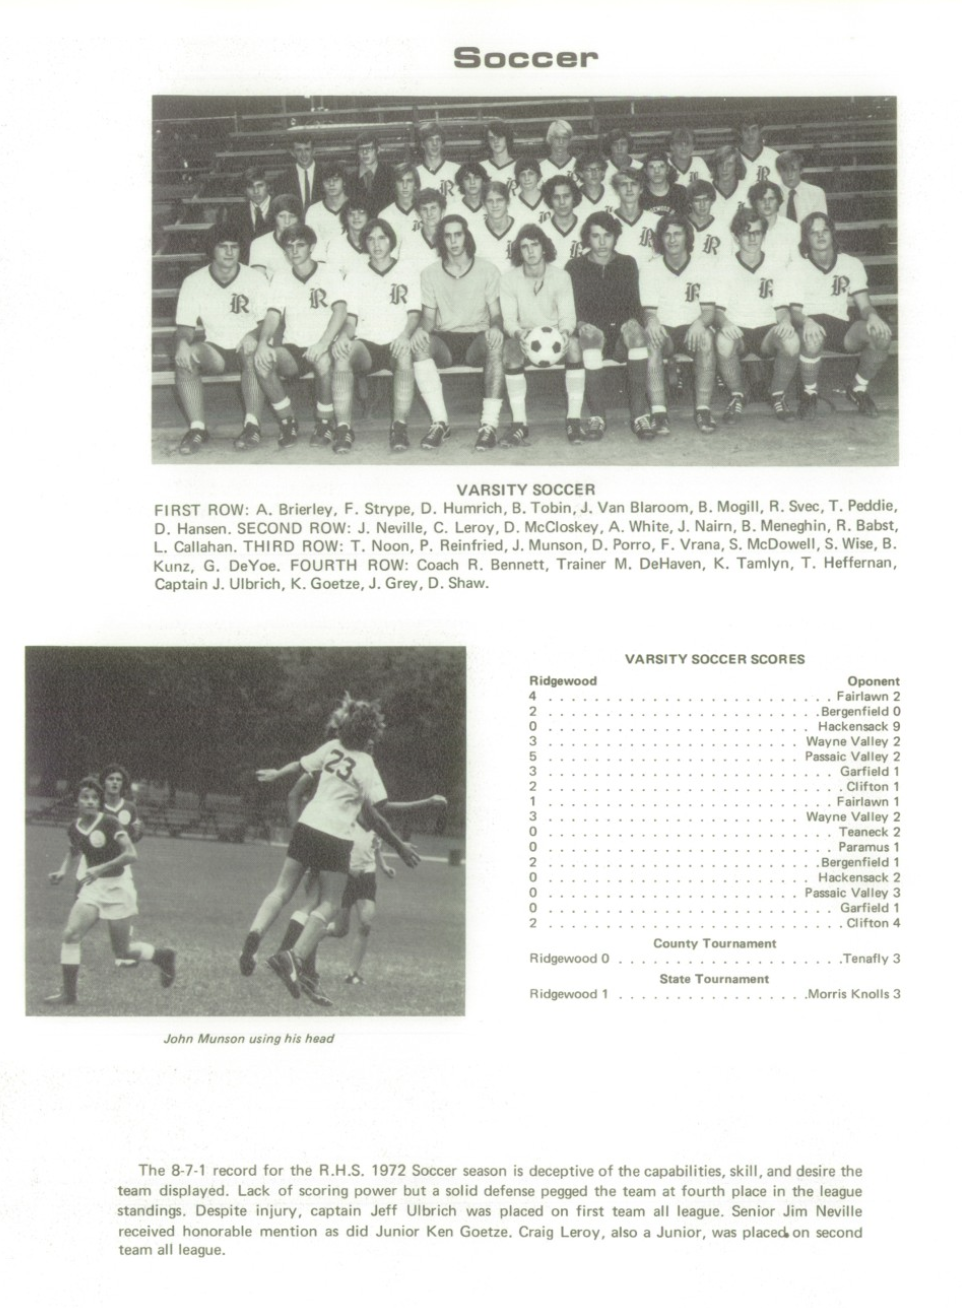 1972 Boys’ Soccer Team